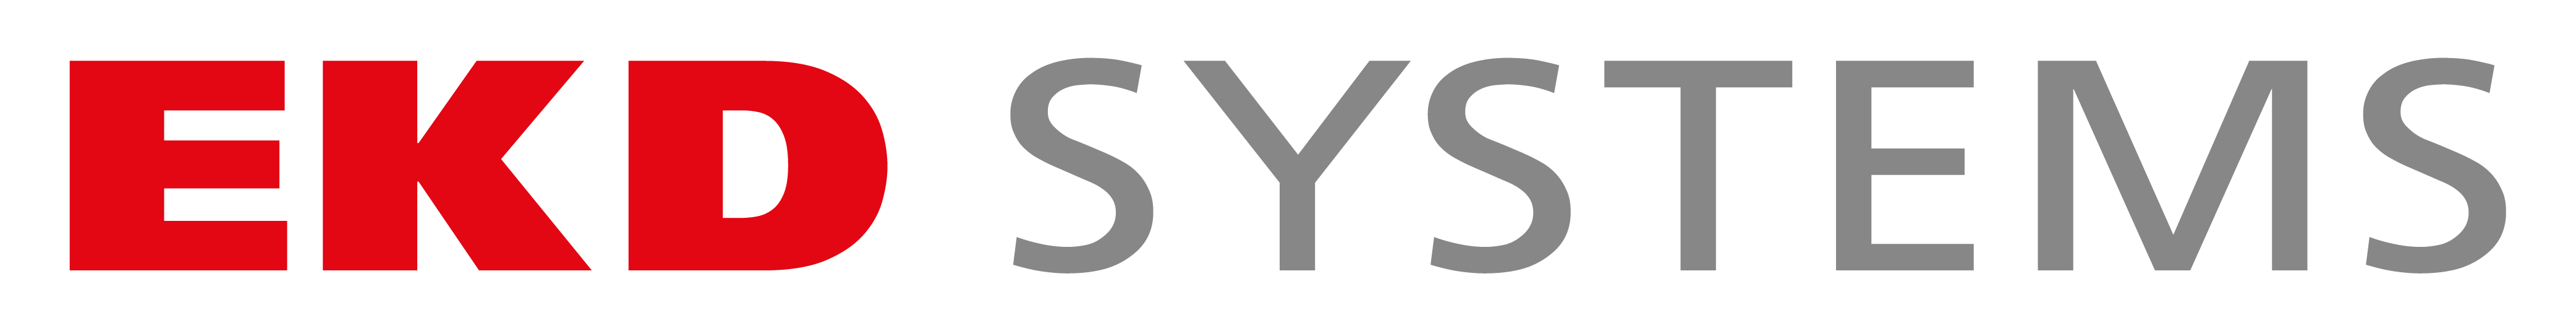 EKD Systems Logo